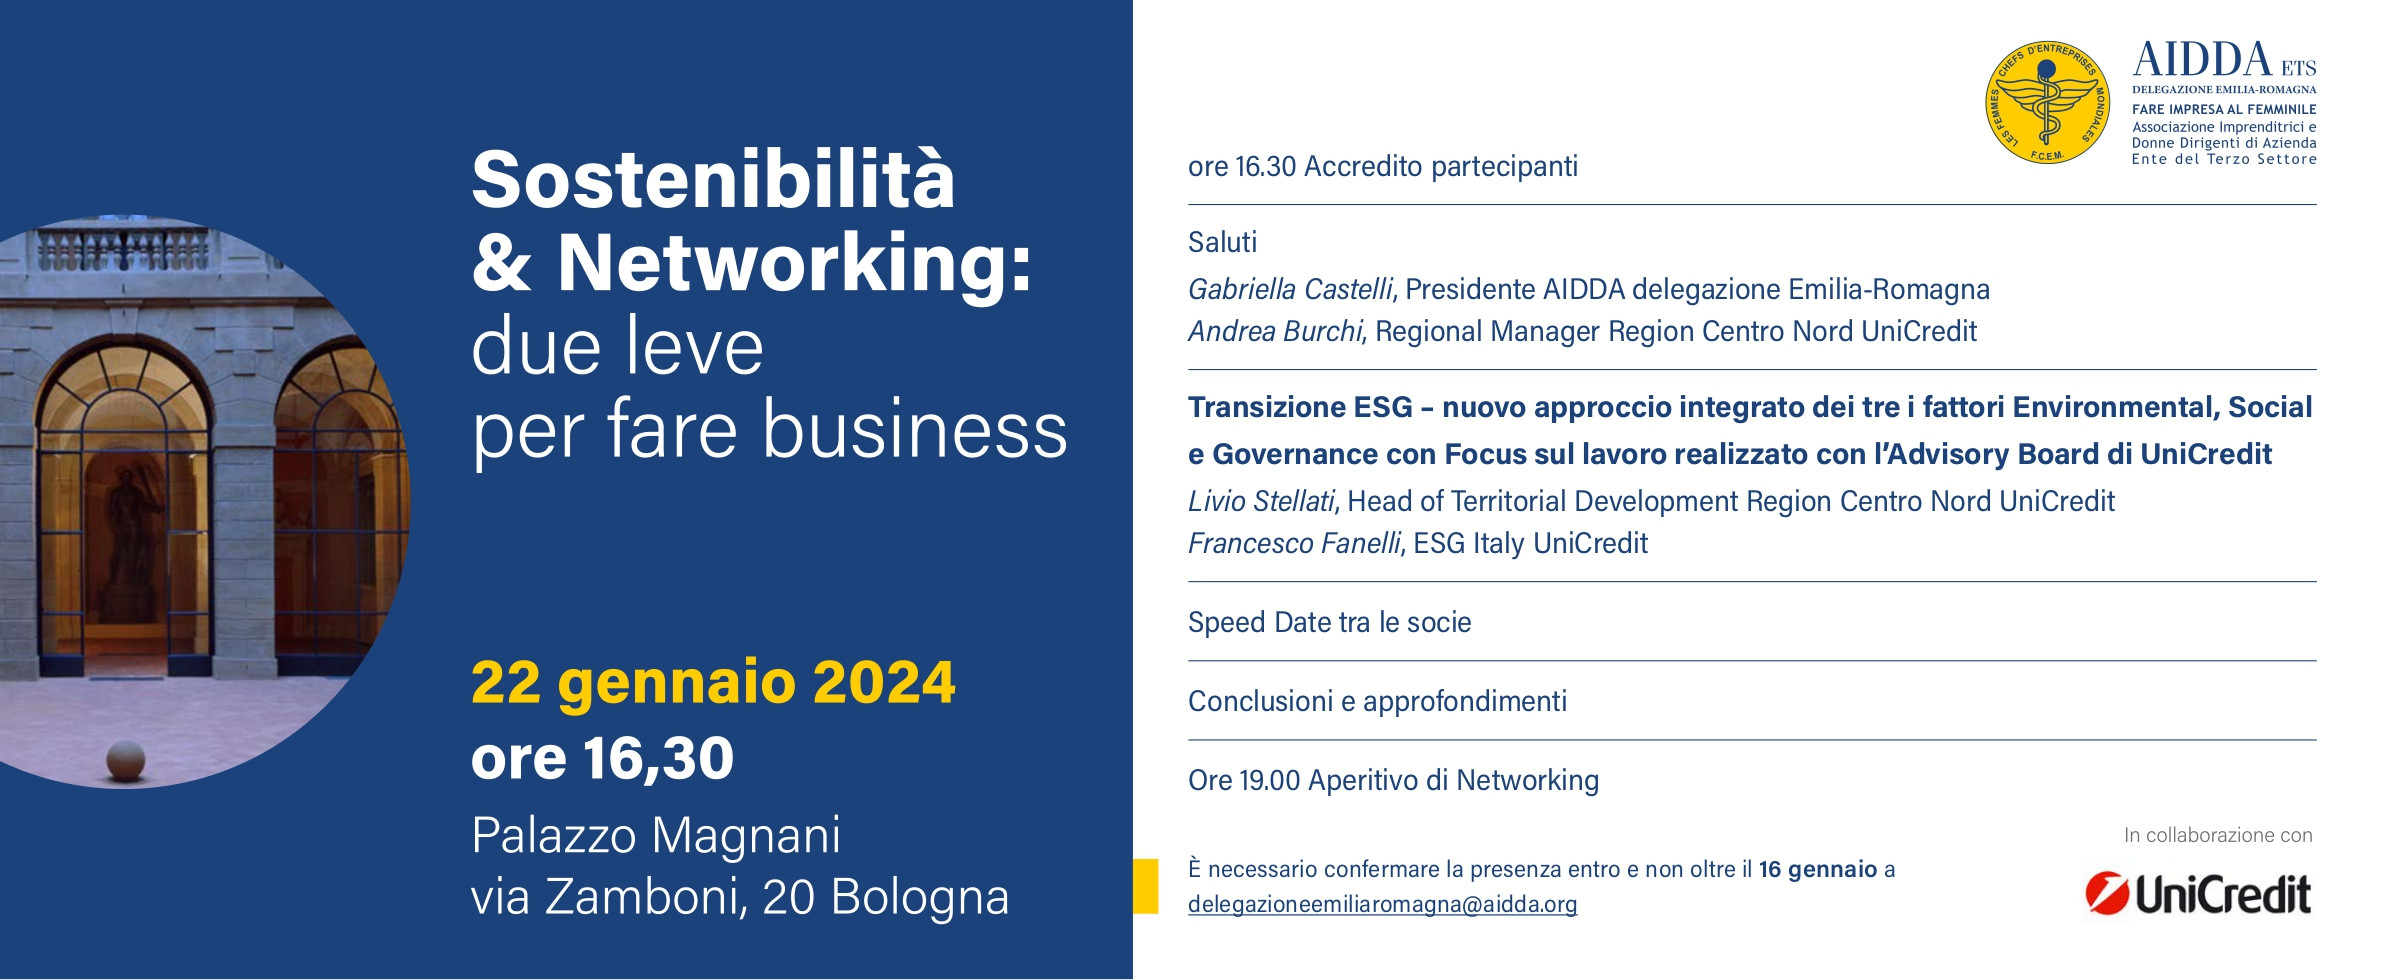 AIDDA ER - Sostenibilità e Networking - lunedì 22 gennaio ore 16.30 - Palazzo Magnani Via Zamboni 20.jpg